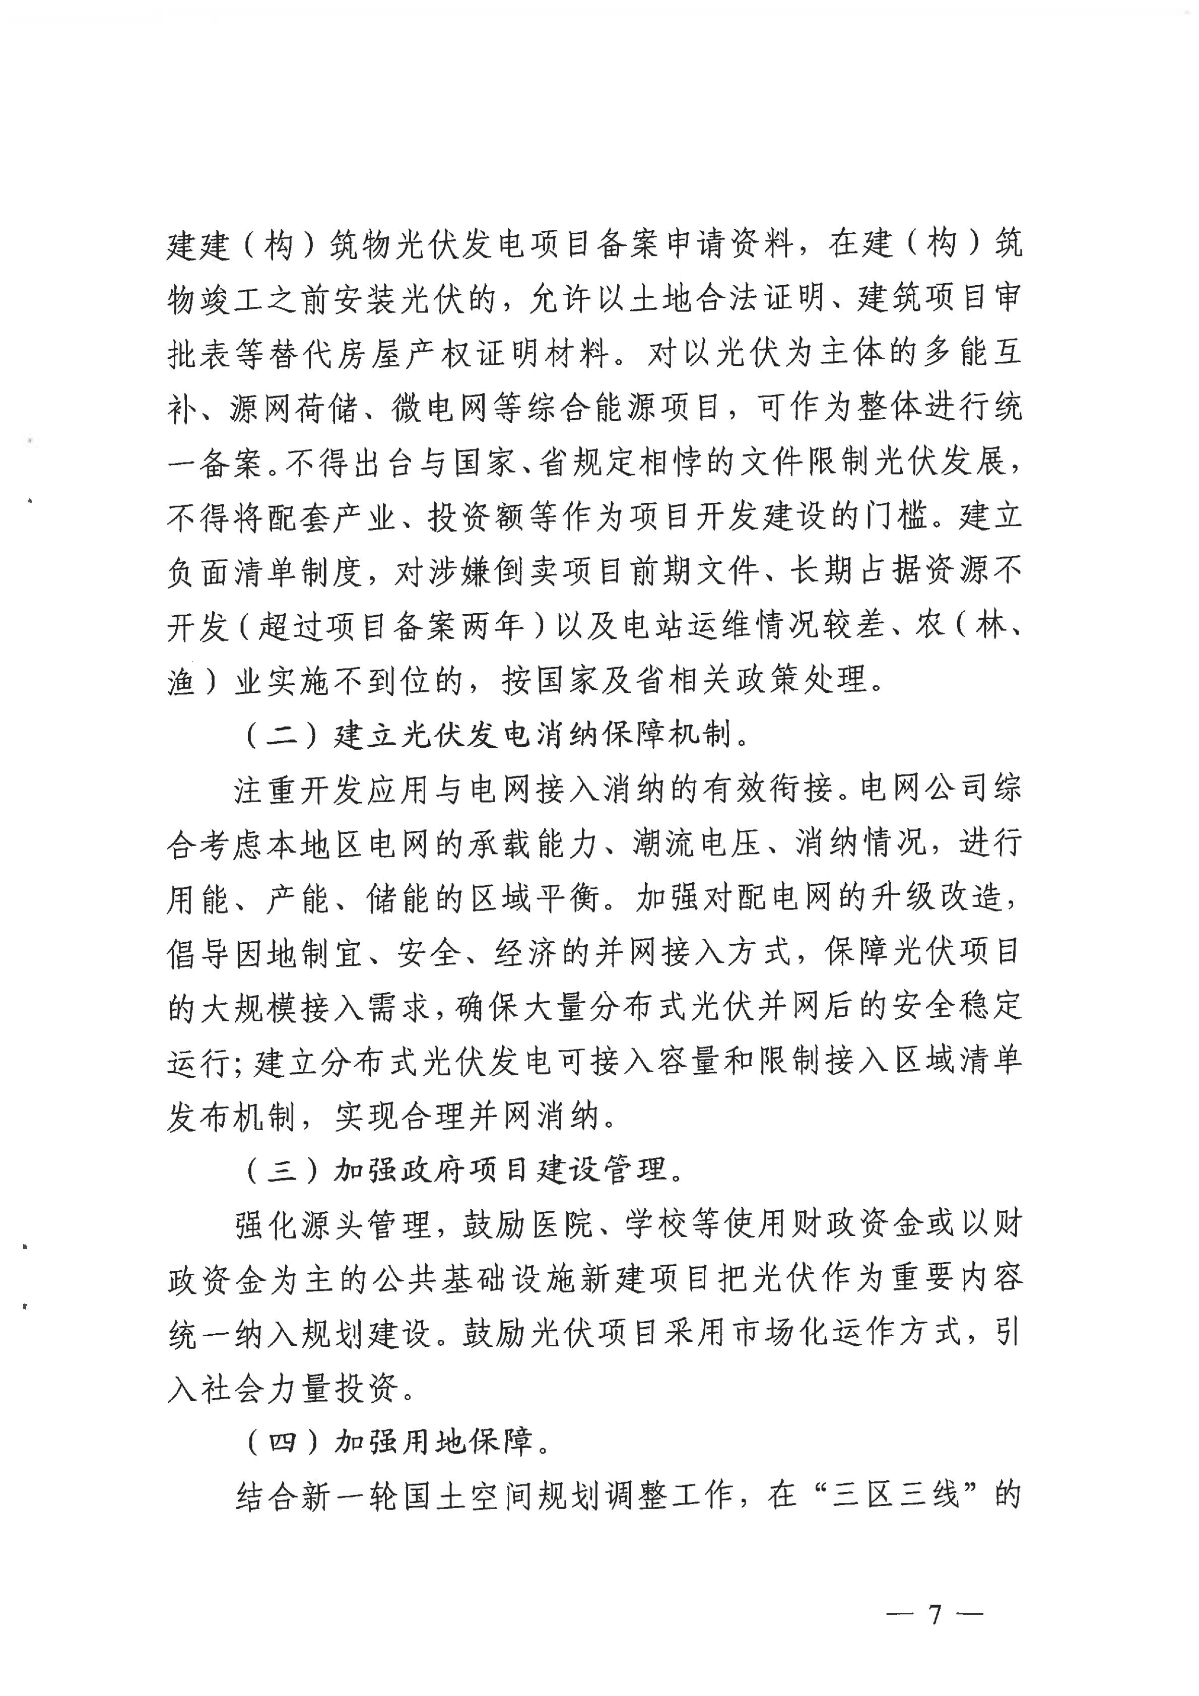 1128关于印发《关于进一步加快杭州市光伏发电项目建设的实施意见》的通知_06.jpg